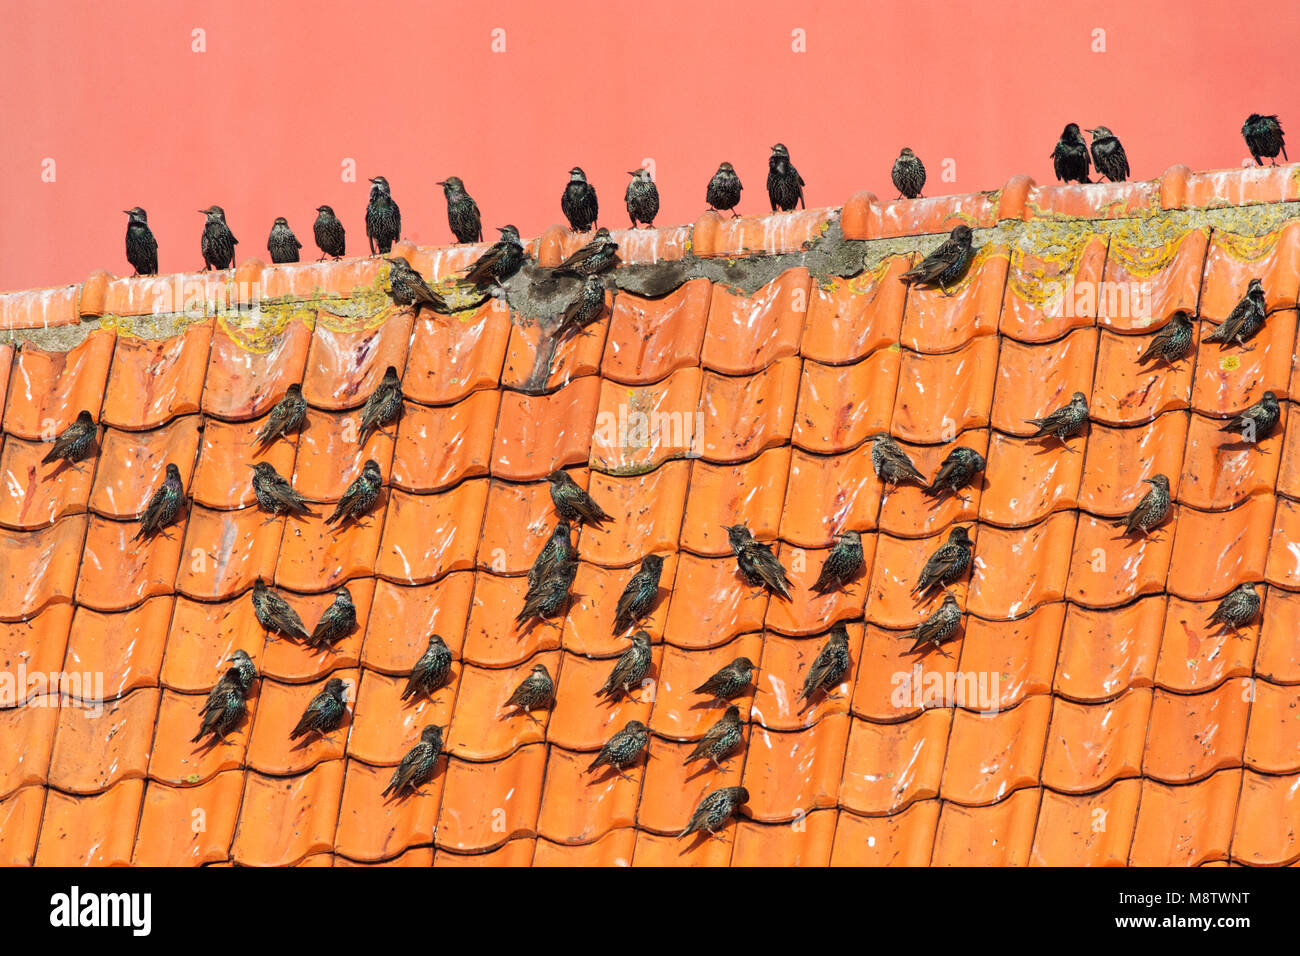 Groep Spreeuwen op een dak voor de vuurtoren van Texel; Common Starlings (Sturnus vulgaris) perched on a roof Stock Photo